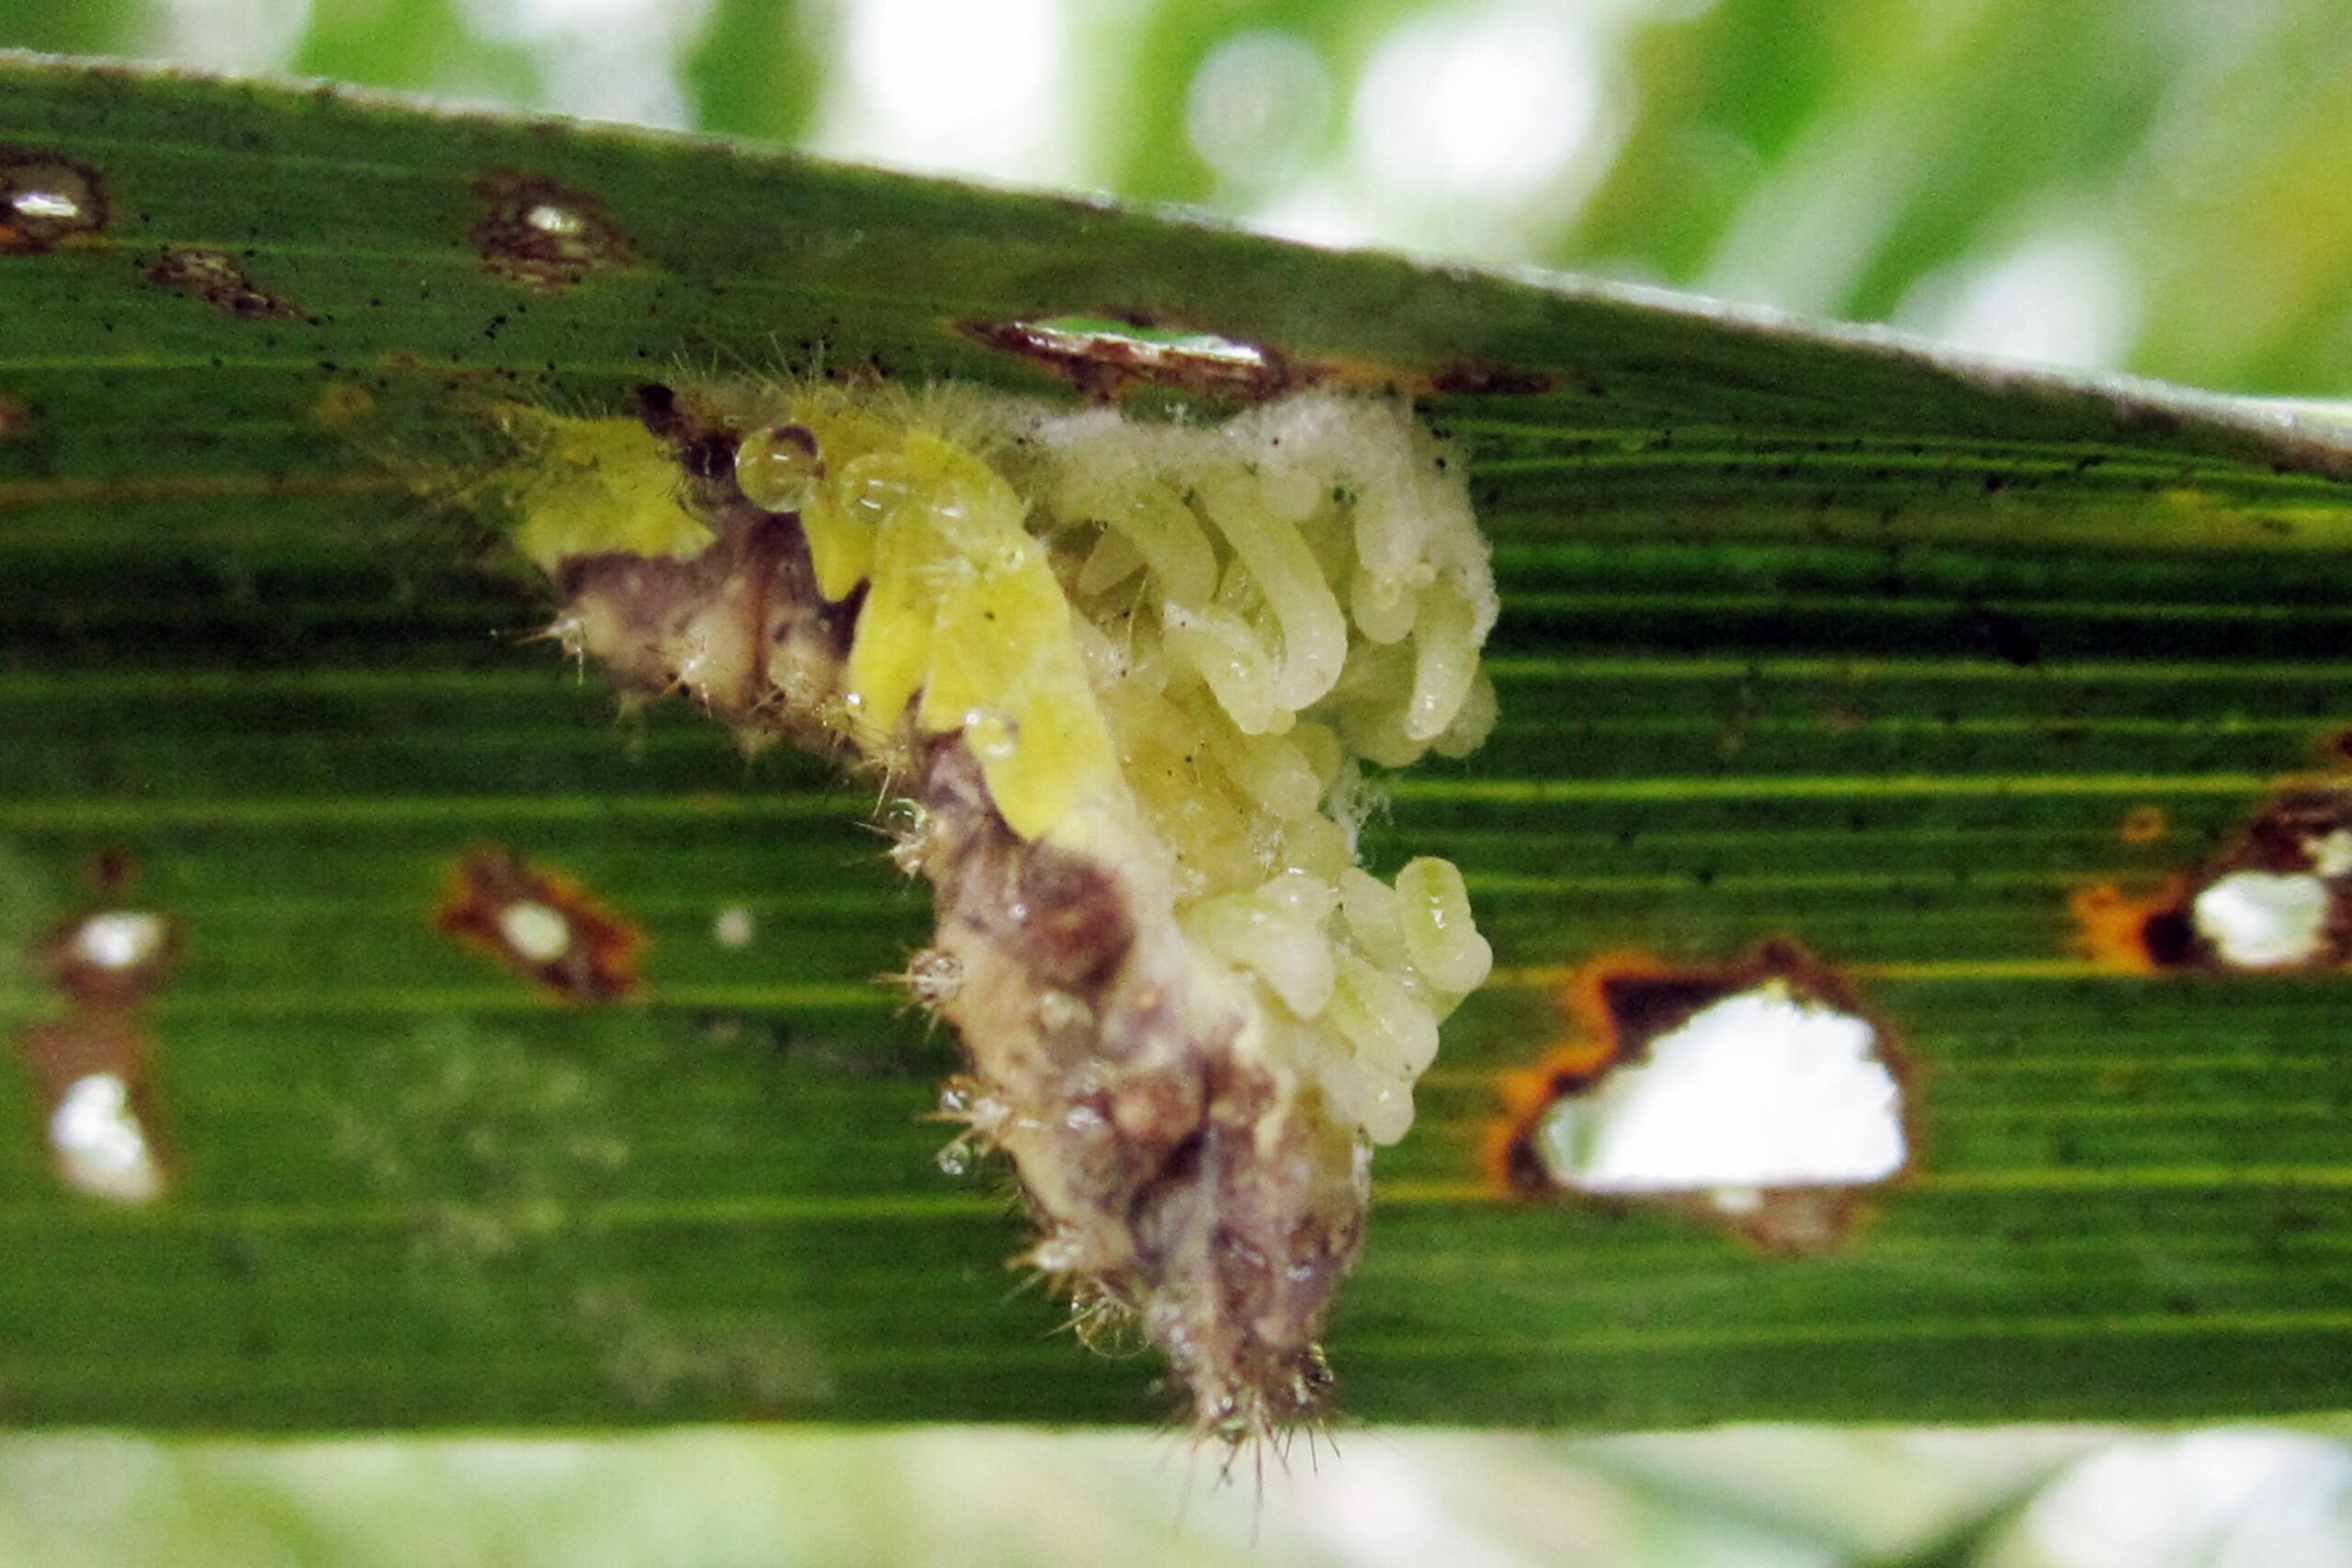 Parasitoid on nettle caterpillar